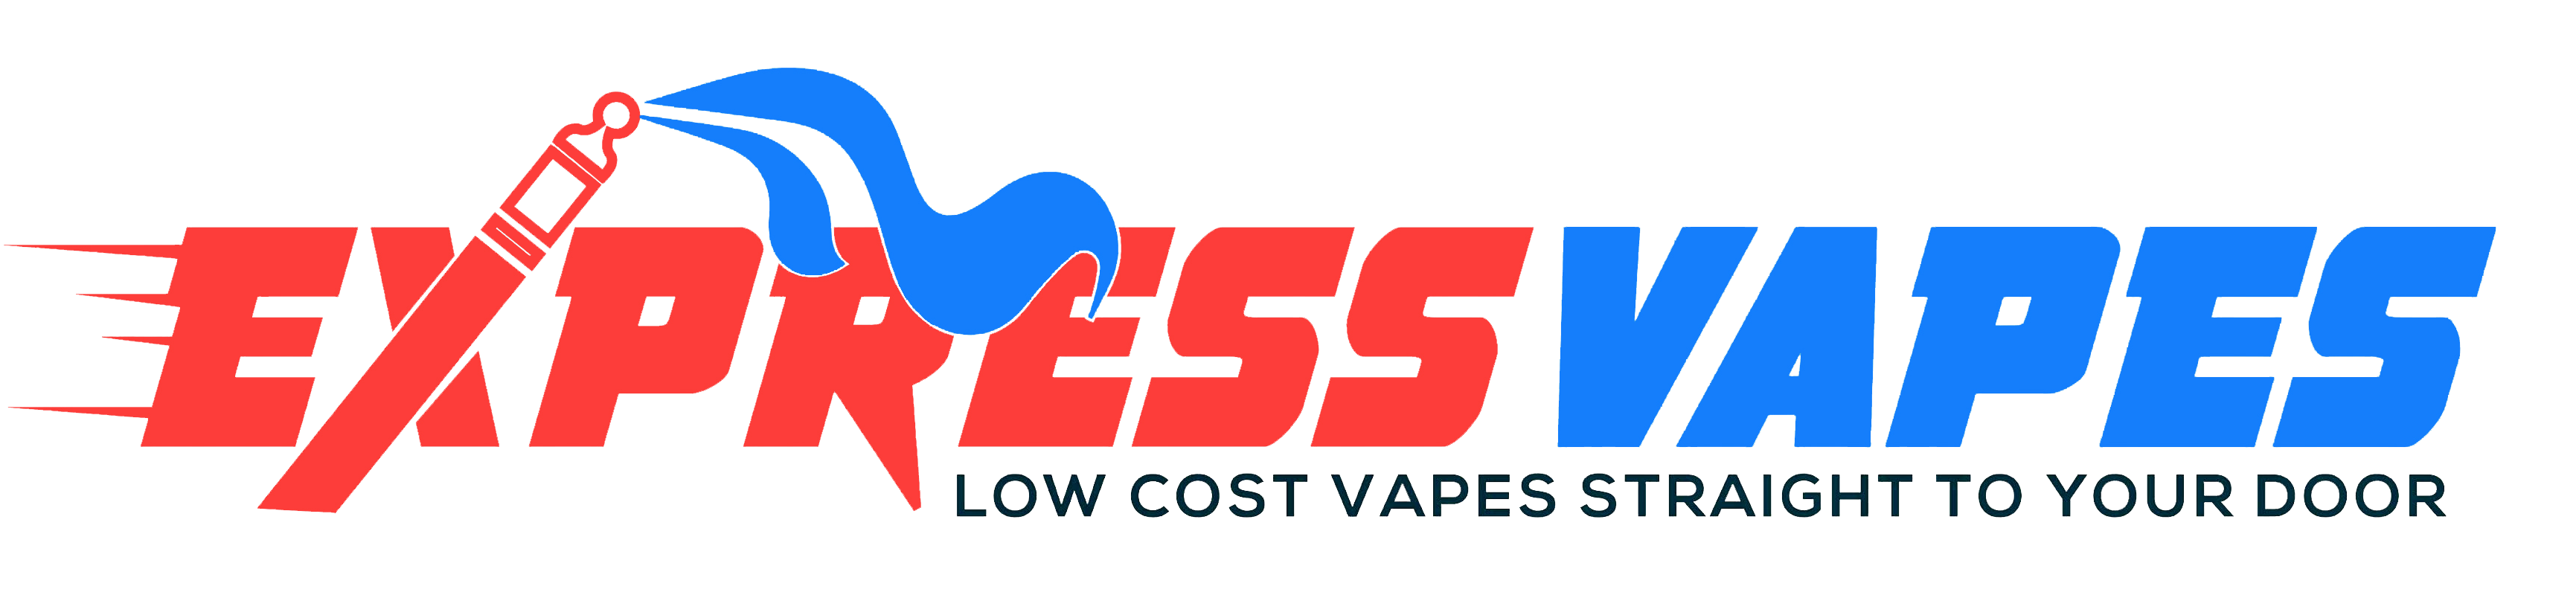 Express vapes logo